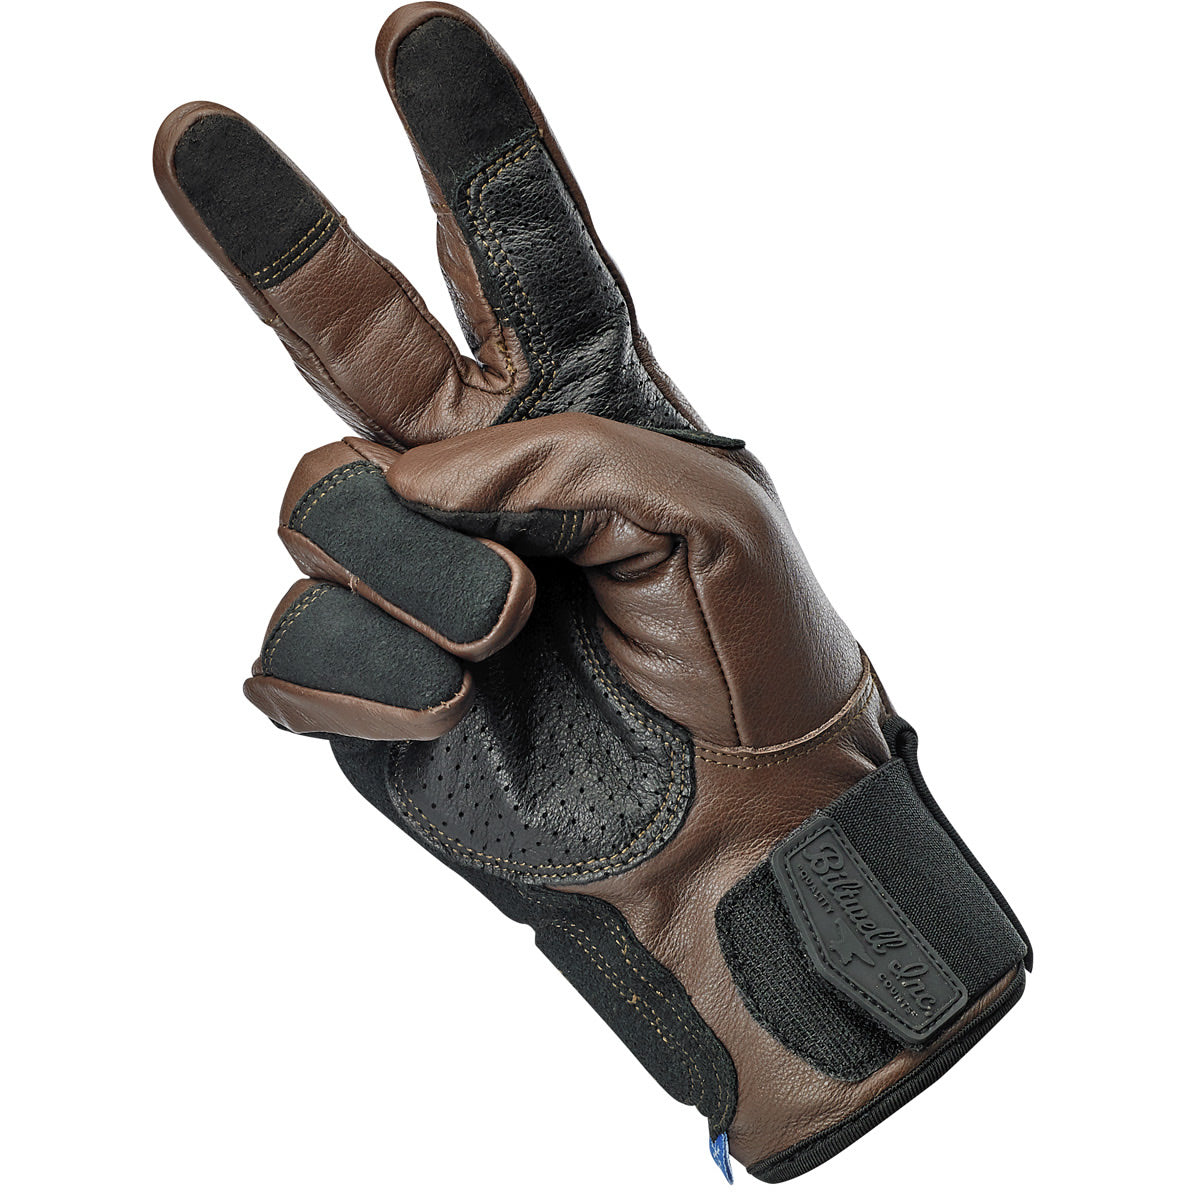 Belden Gloves - Chocolate/Black